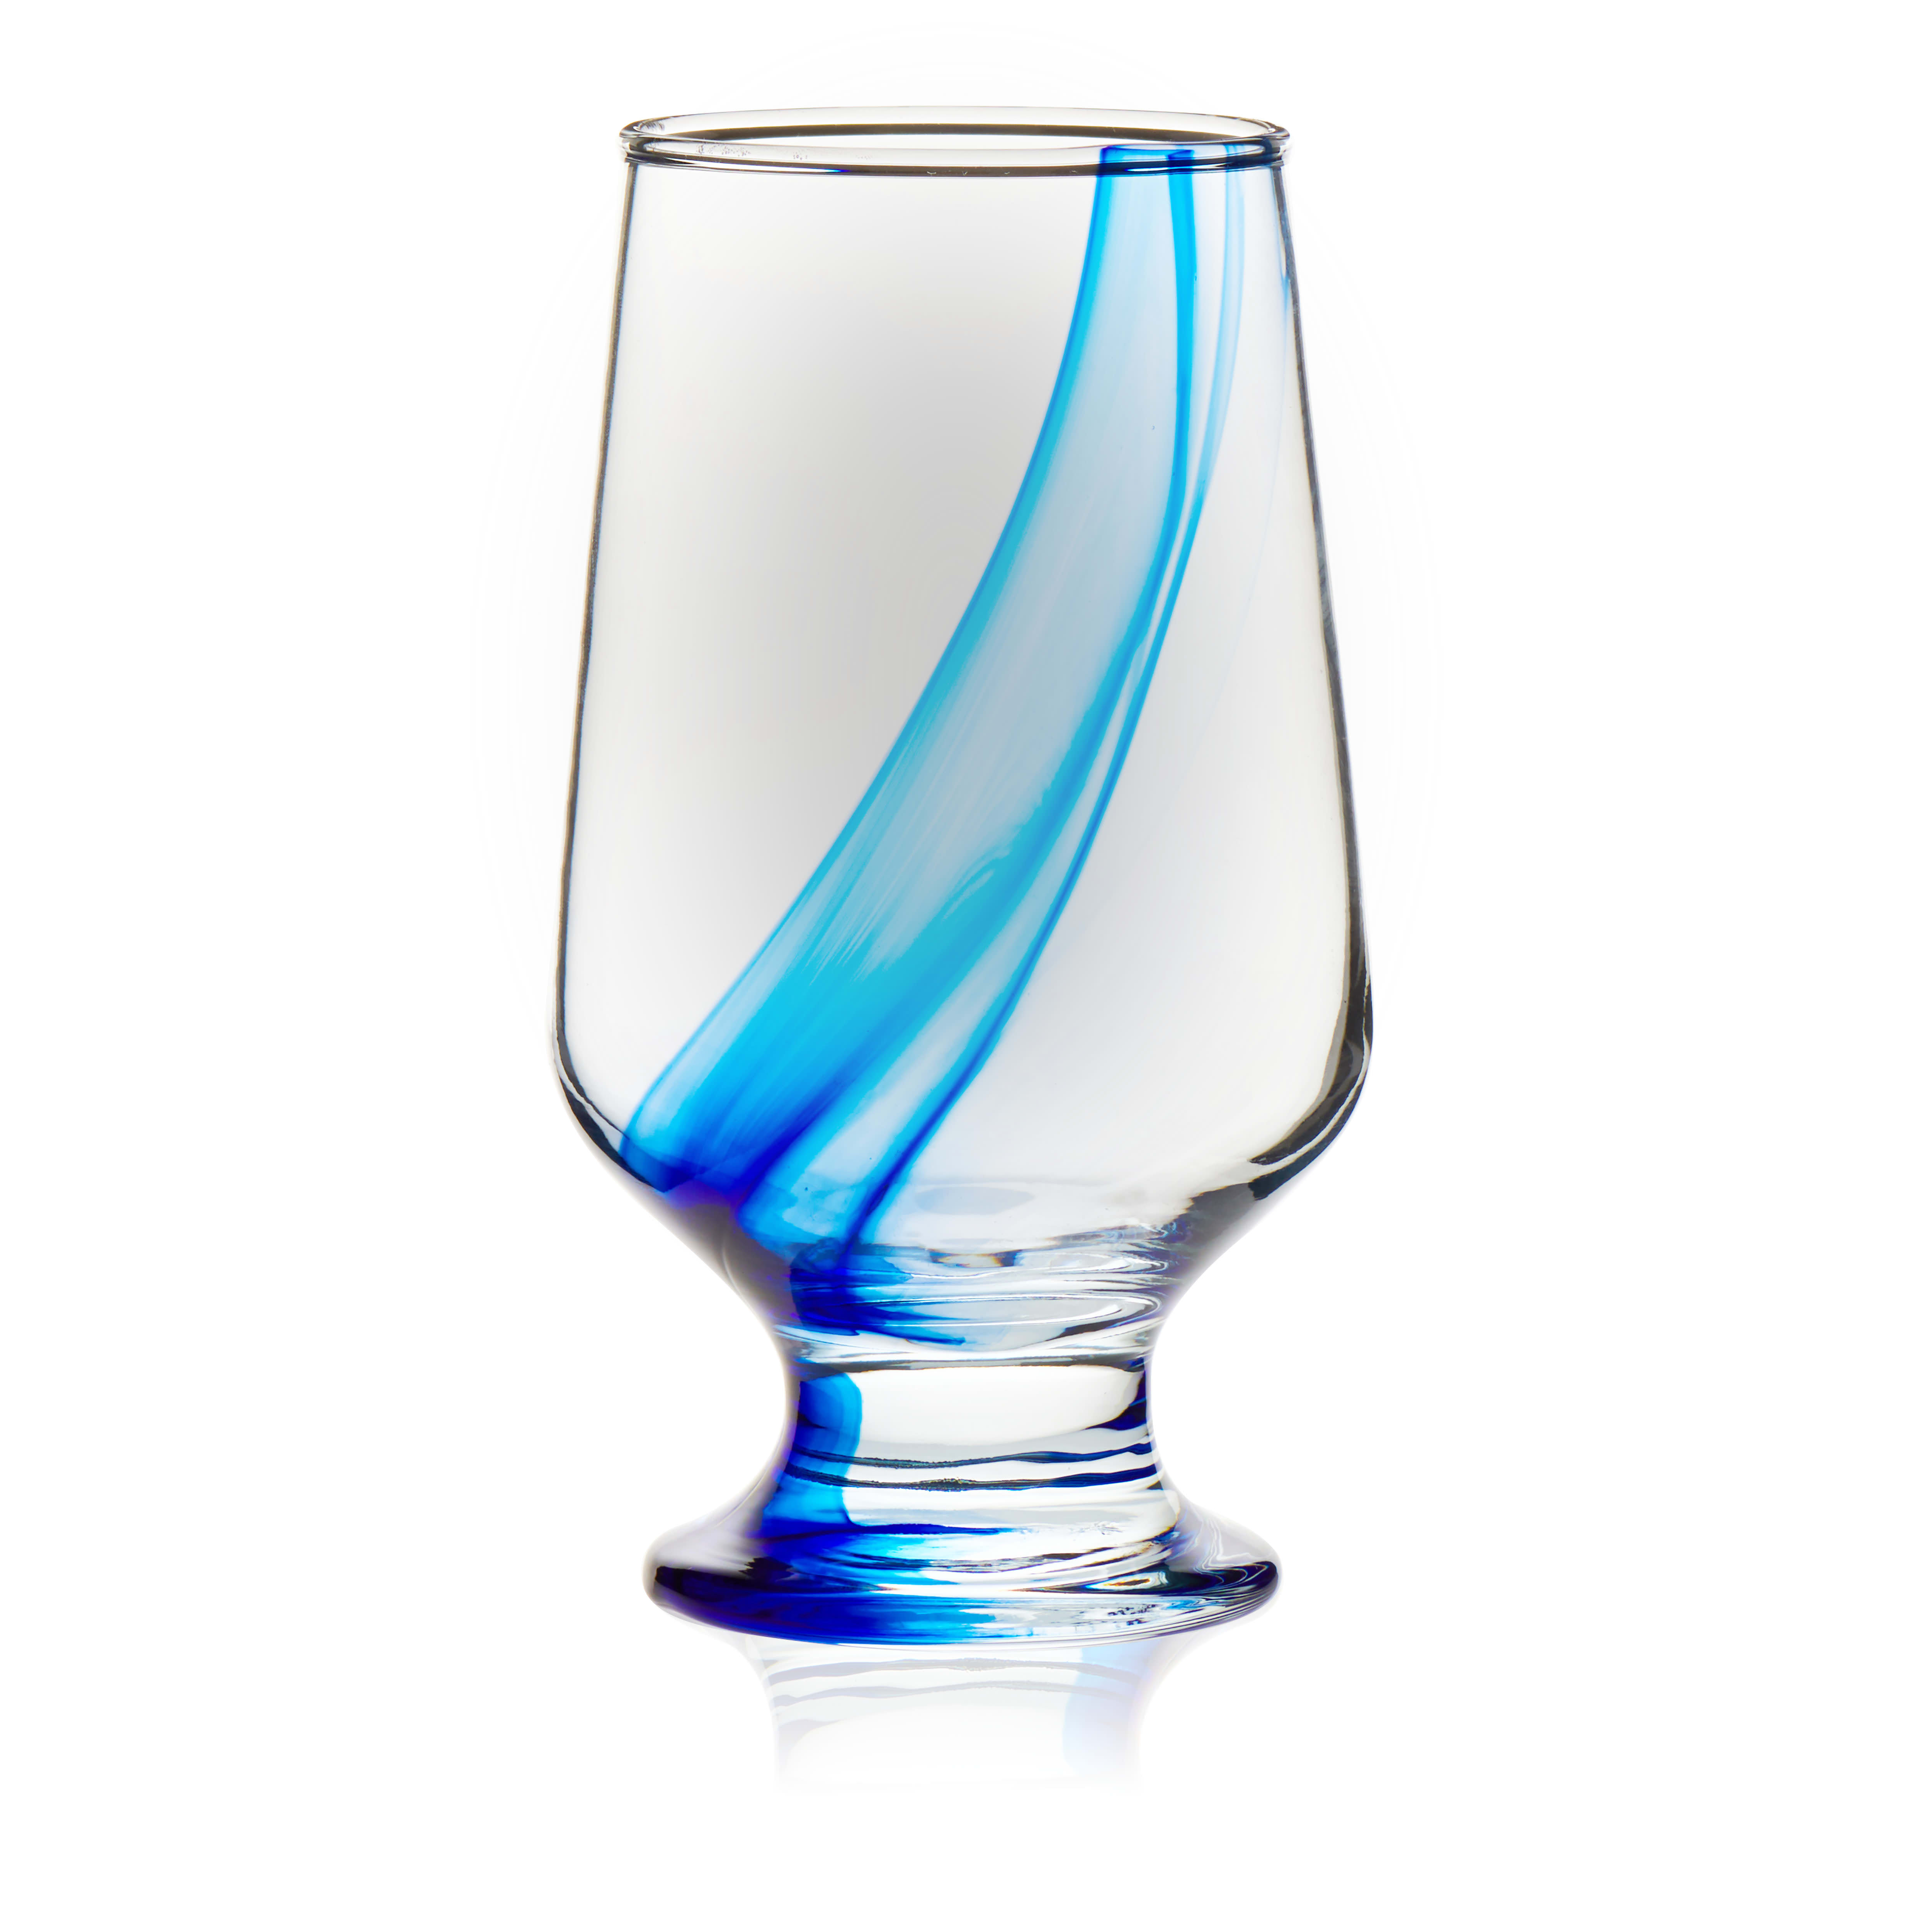 https://assets.wfcdn.com/im/43805153/compr-r85/2584/258475969/libbey-blue-ribbon-goblet-beverage-glasses-128-oz.jpg